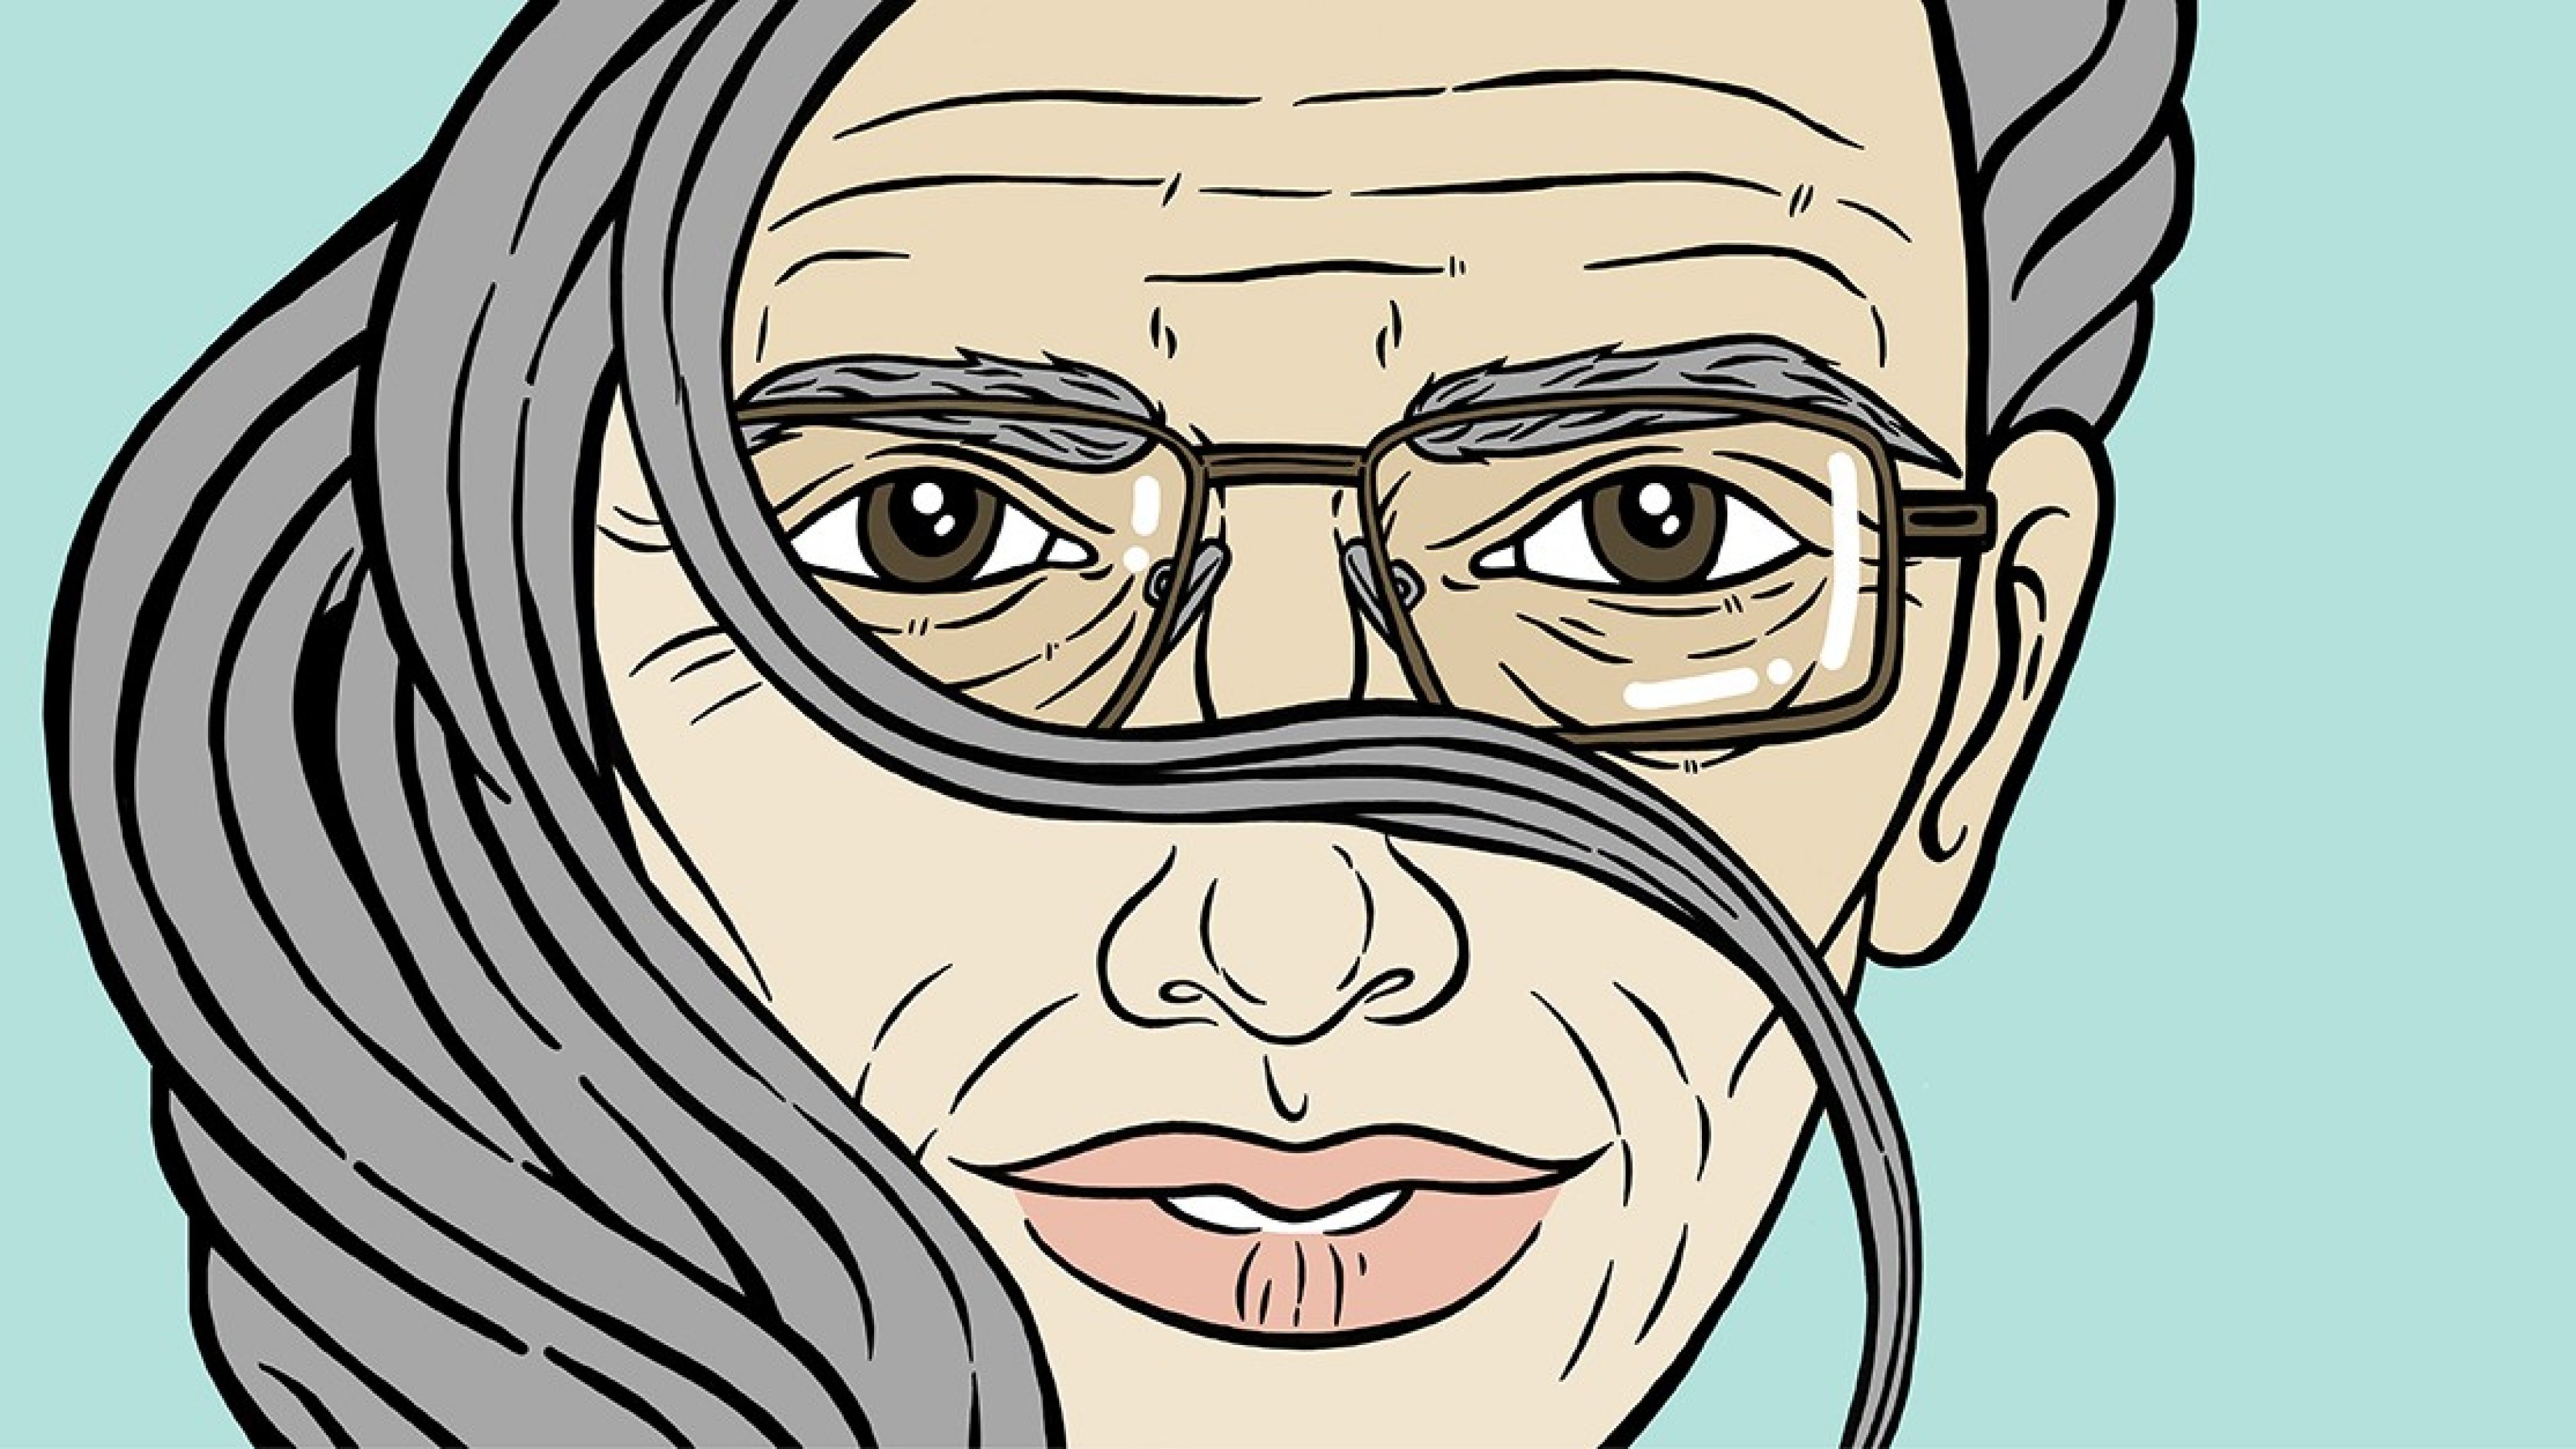 Illustration visage moitié homme âgé avec lunettes, yeux bruns, et moitié femme âgée avec lèvres courbées, les deux avec cheveux gris